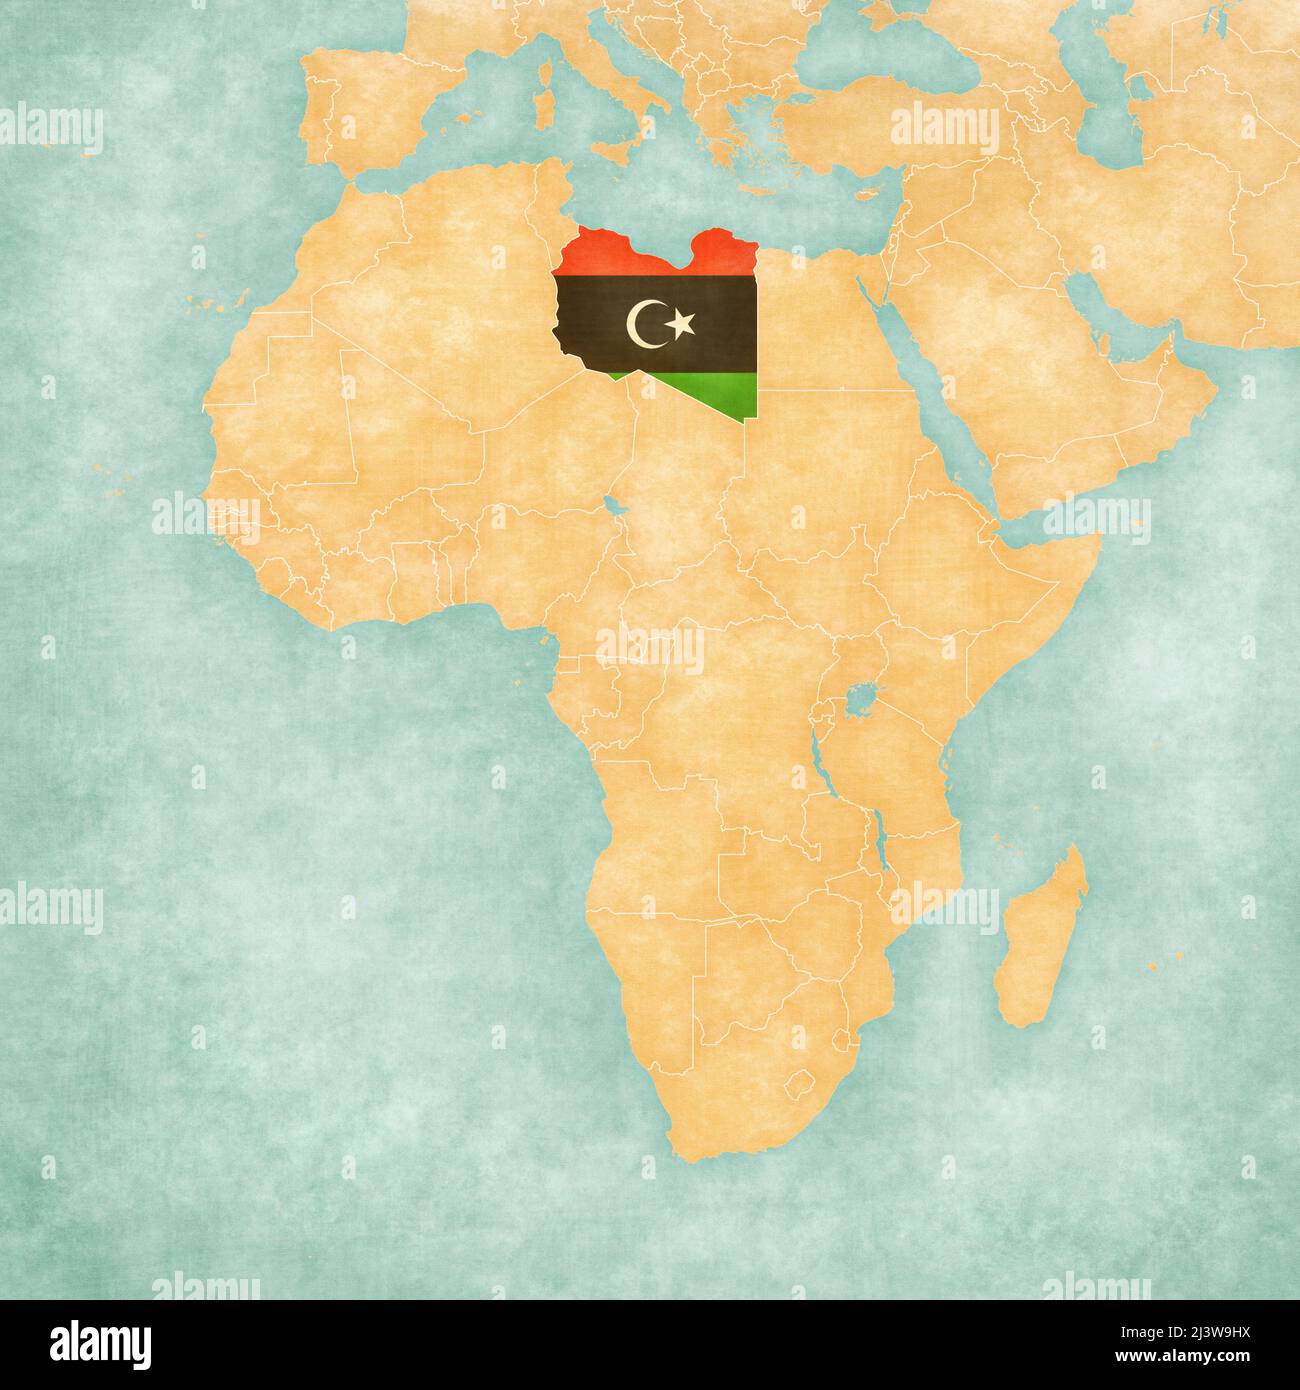 Libia (bandiera libica) sulla mappa dell'Africa. La mappa è in morbido  grunge e vintage stile, come la pittura acquerello su carta vecchia Foto  stock - Alamy